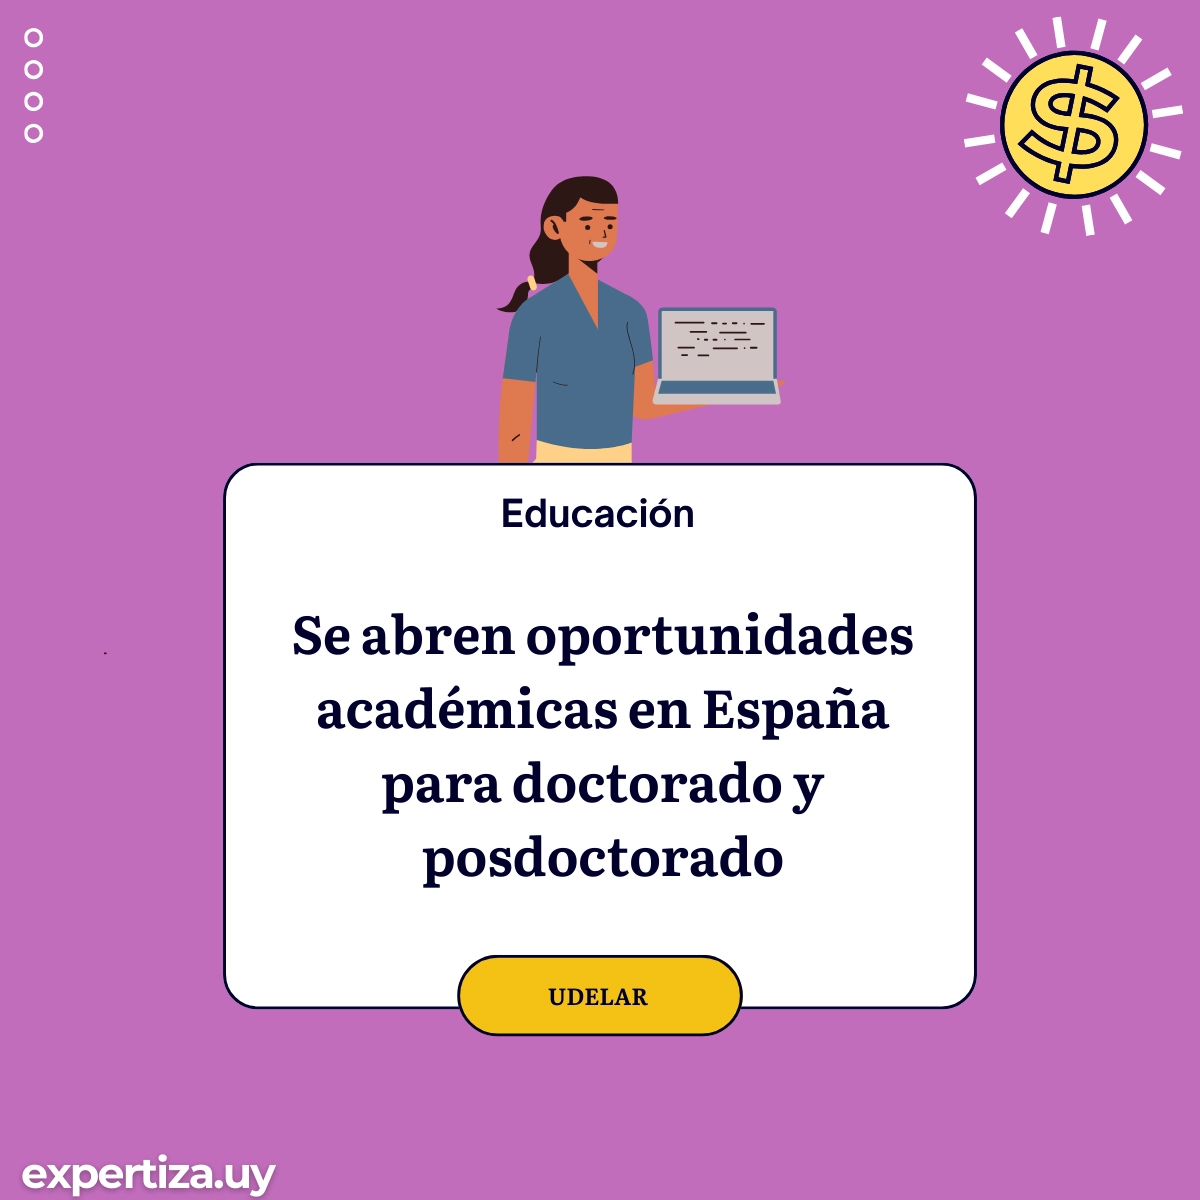 Se abren oportunidades académicas en España para doctorado y posdoctorado.